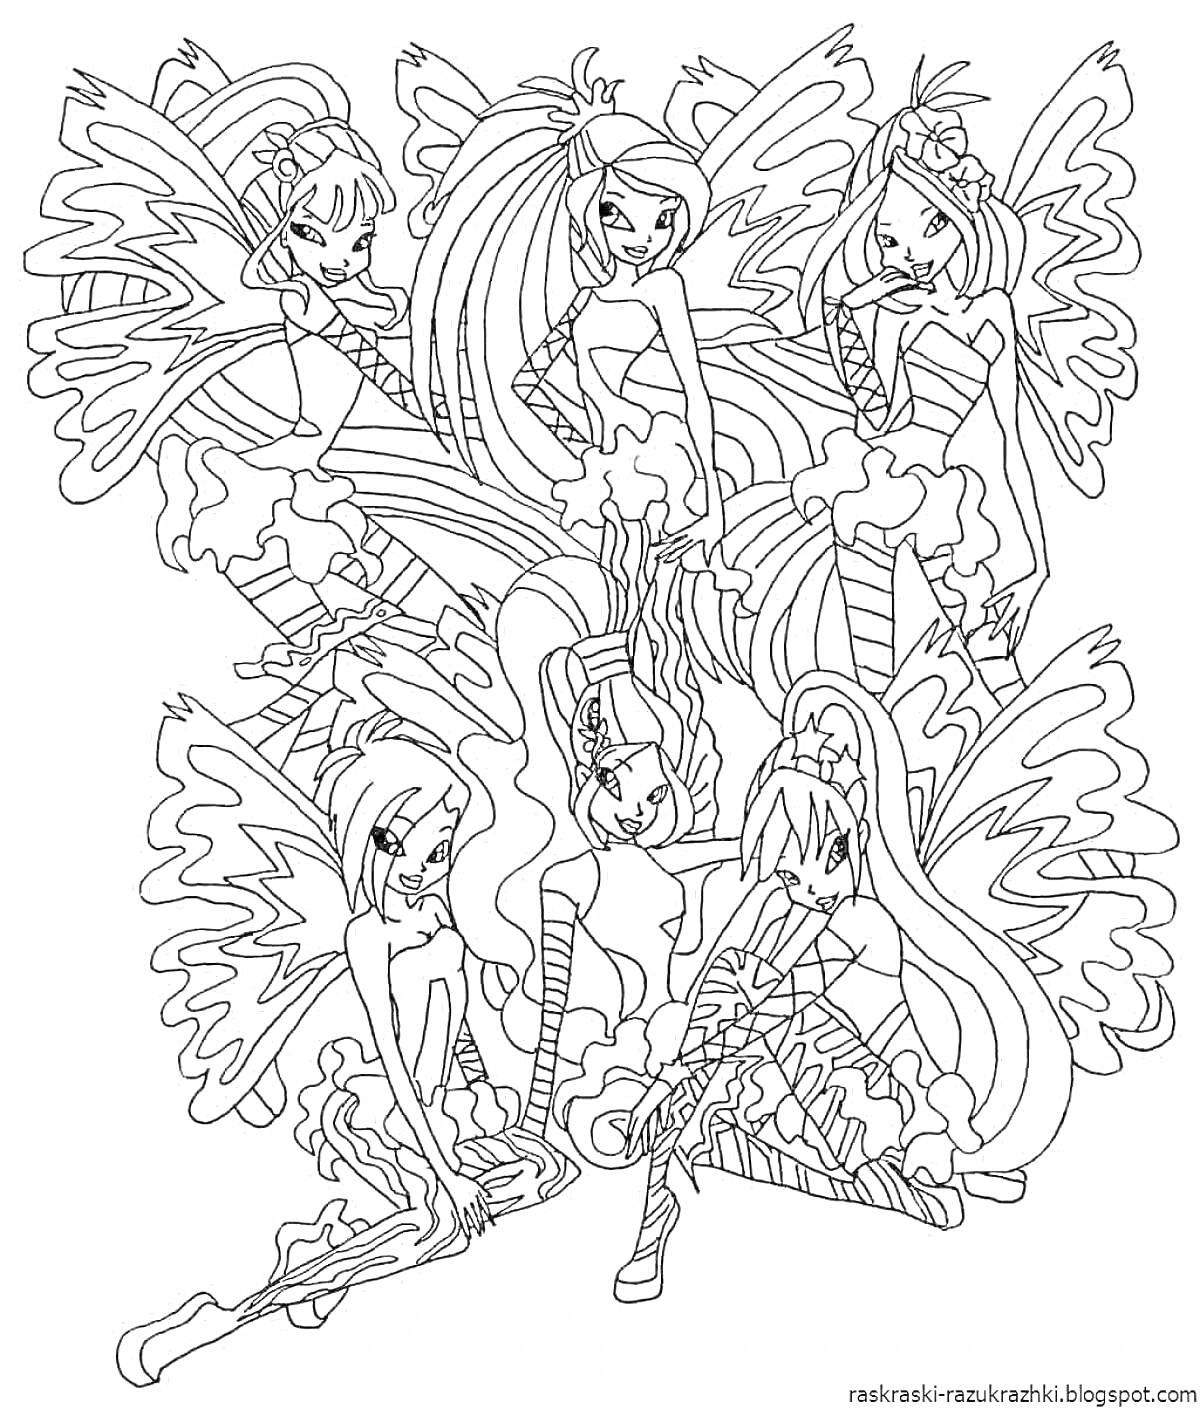 Раскраска Картинка с изображением шести девушек с крыльями, в воздушных платьях, сидящих и стоящих в различных позах.